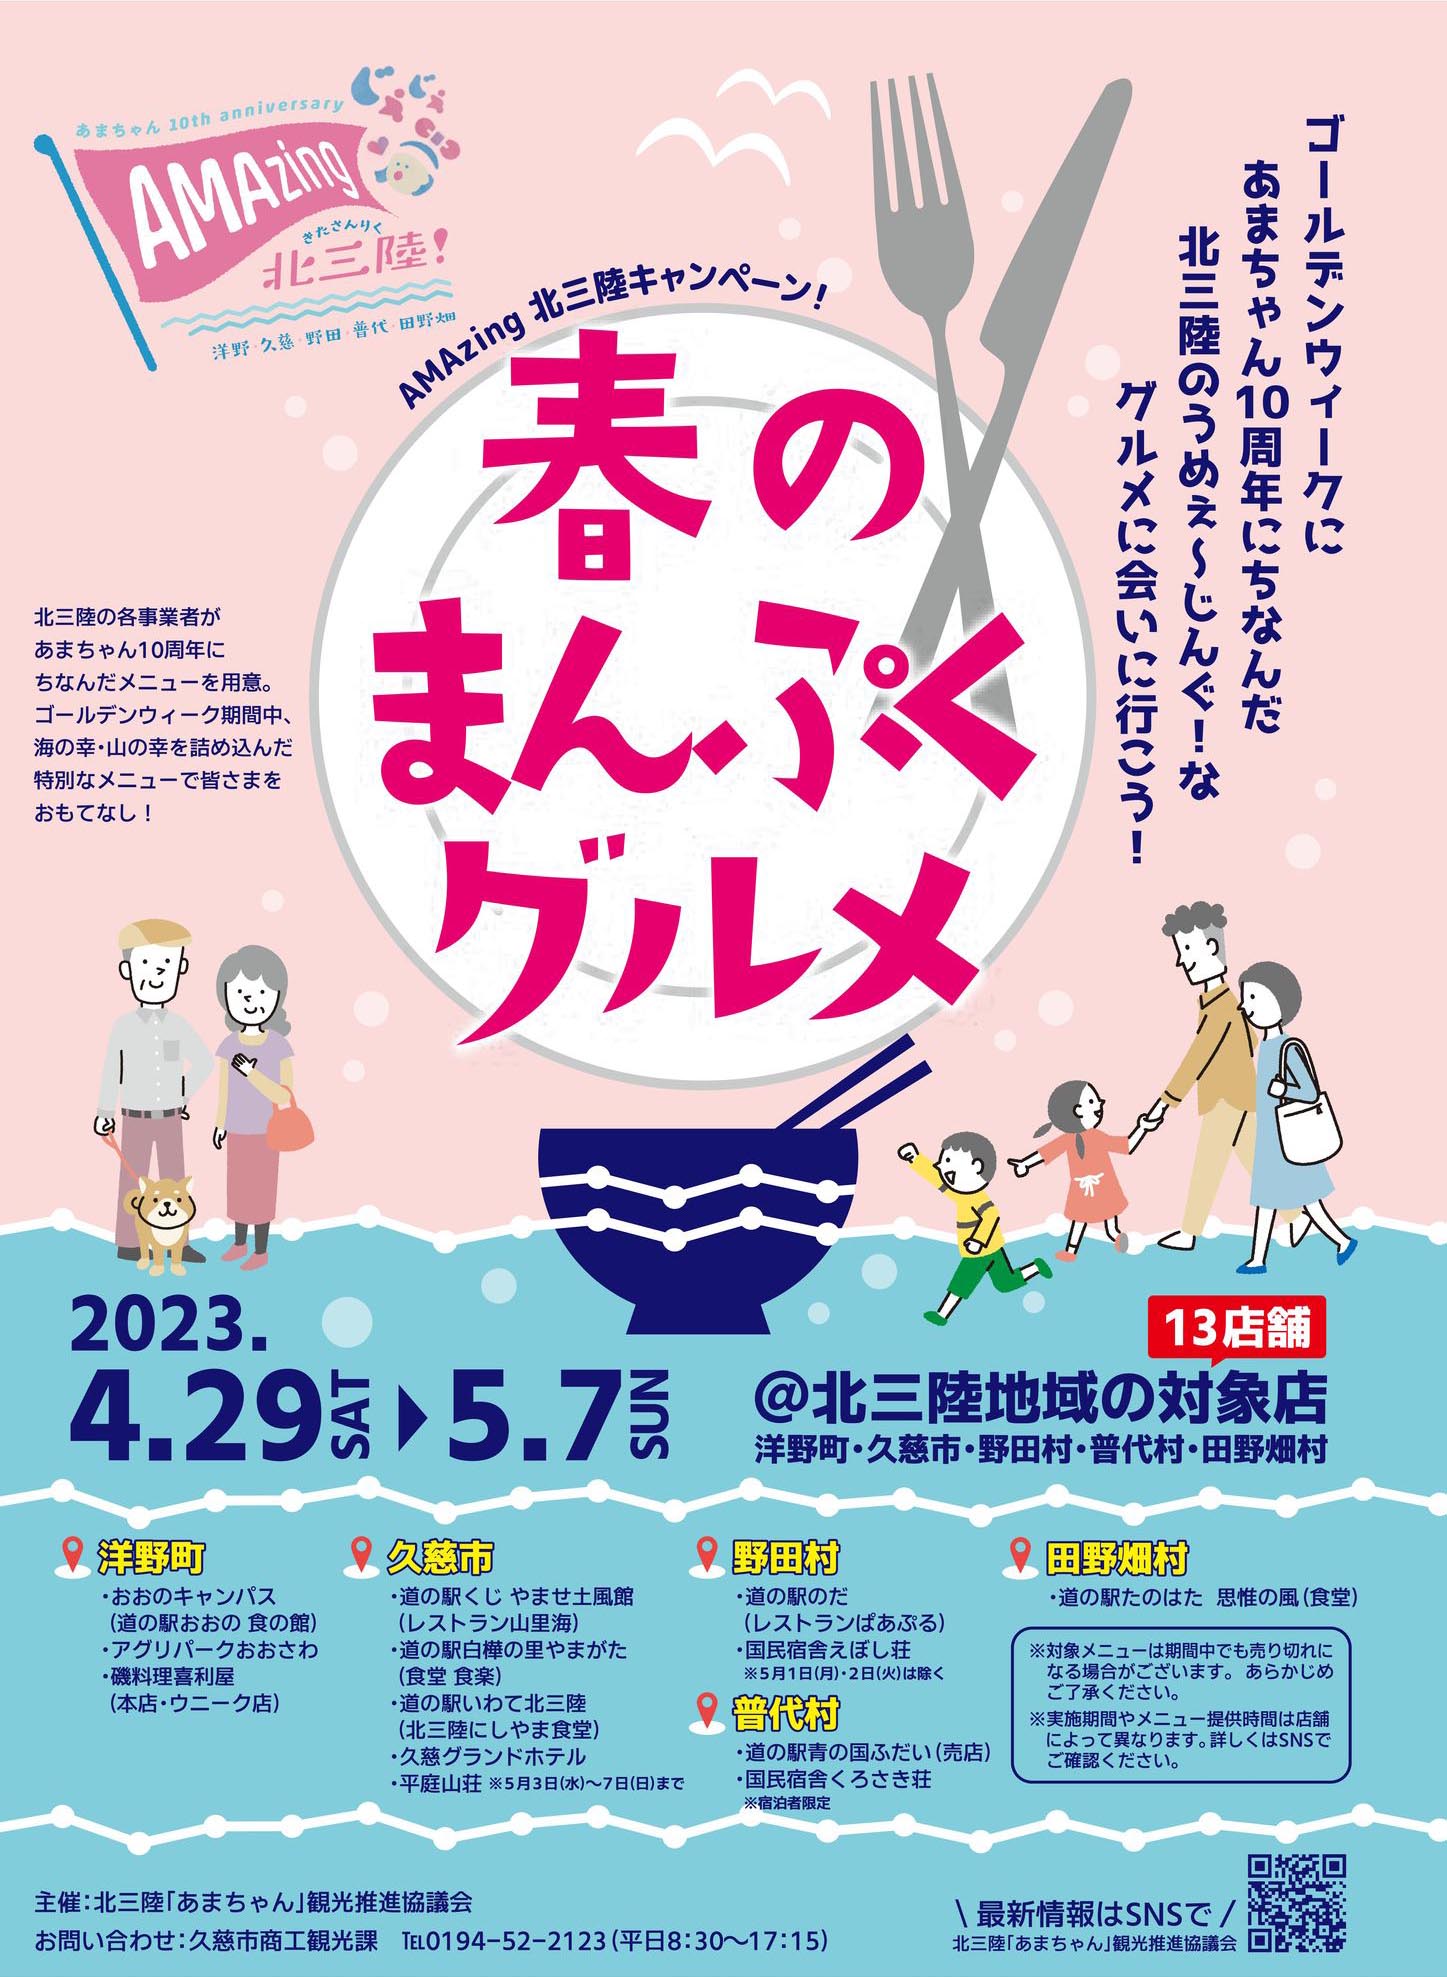 AMAzing北三陸キャンペーン「春のまんぷくグルメ」 